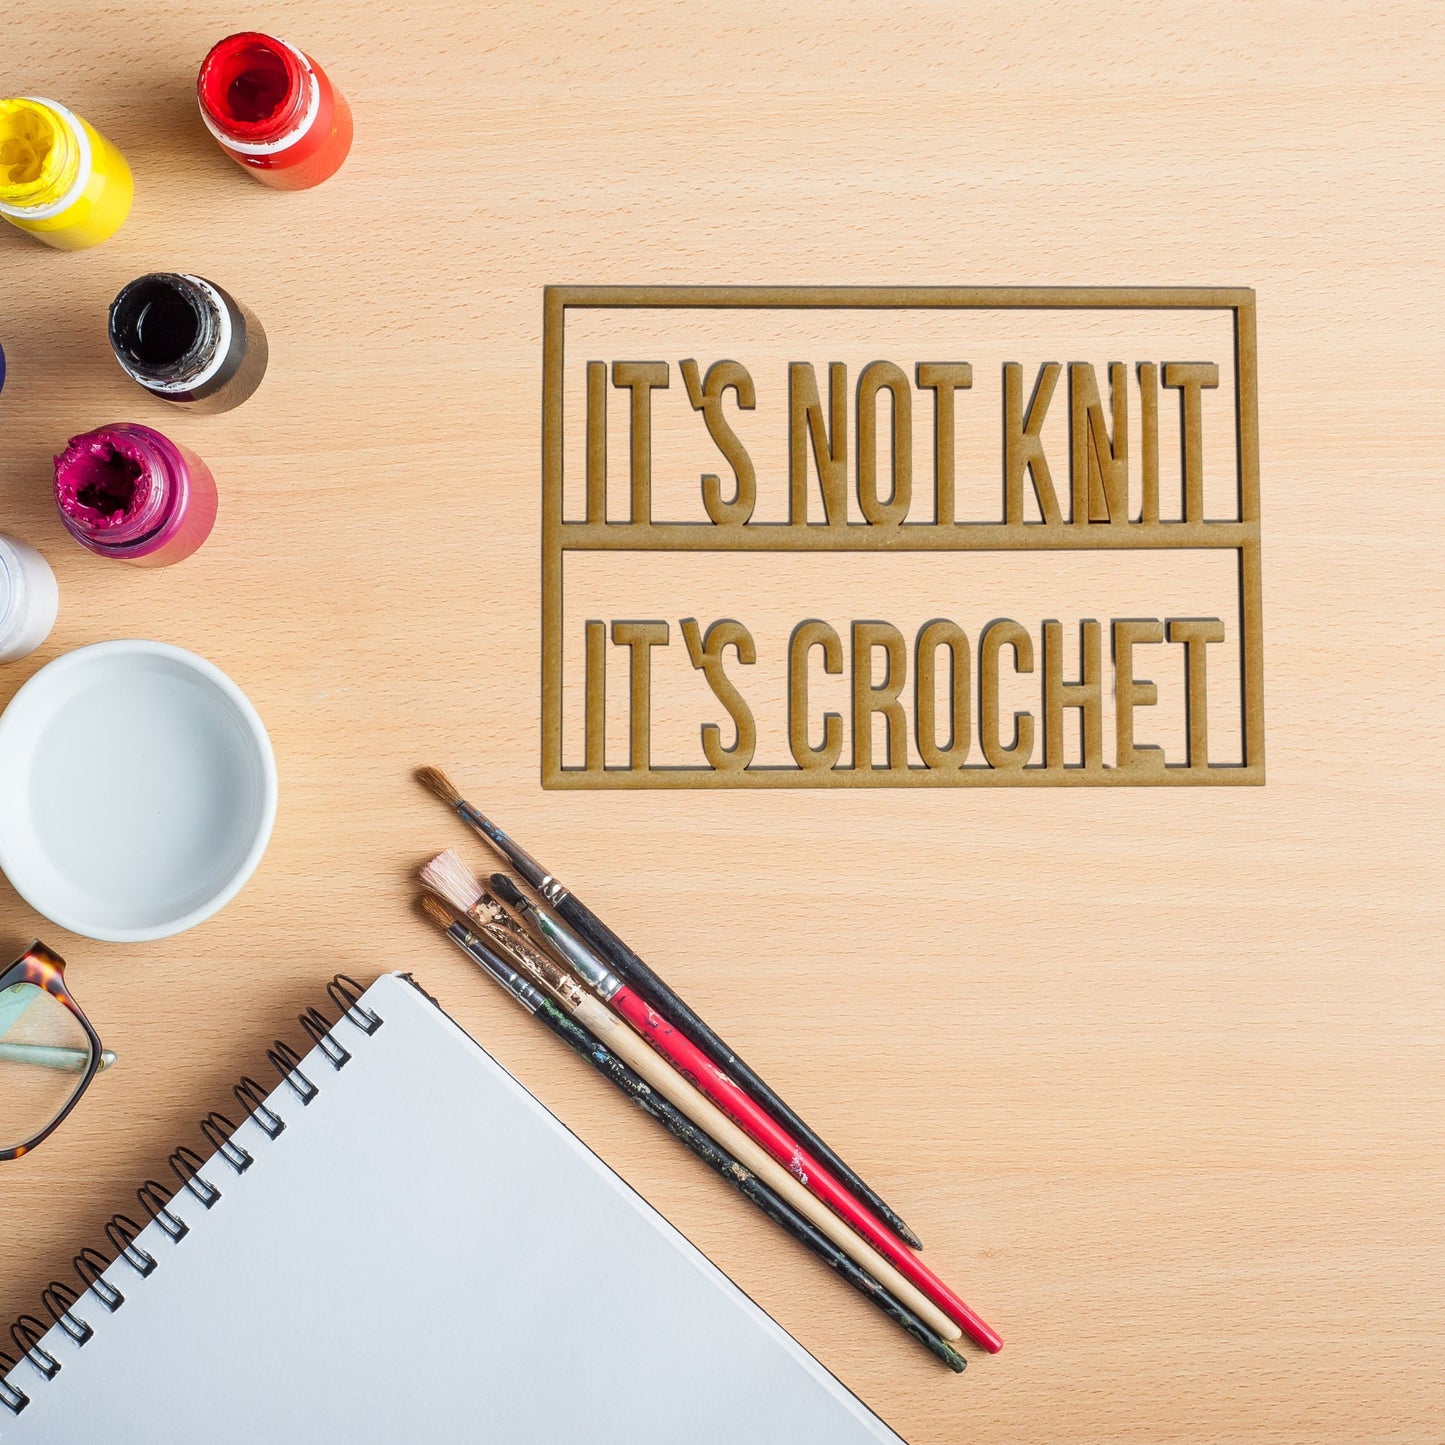 It's Not Knit it's Crochet Wall Sign